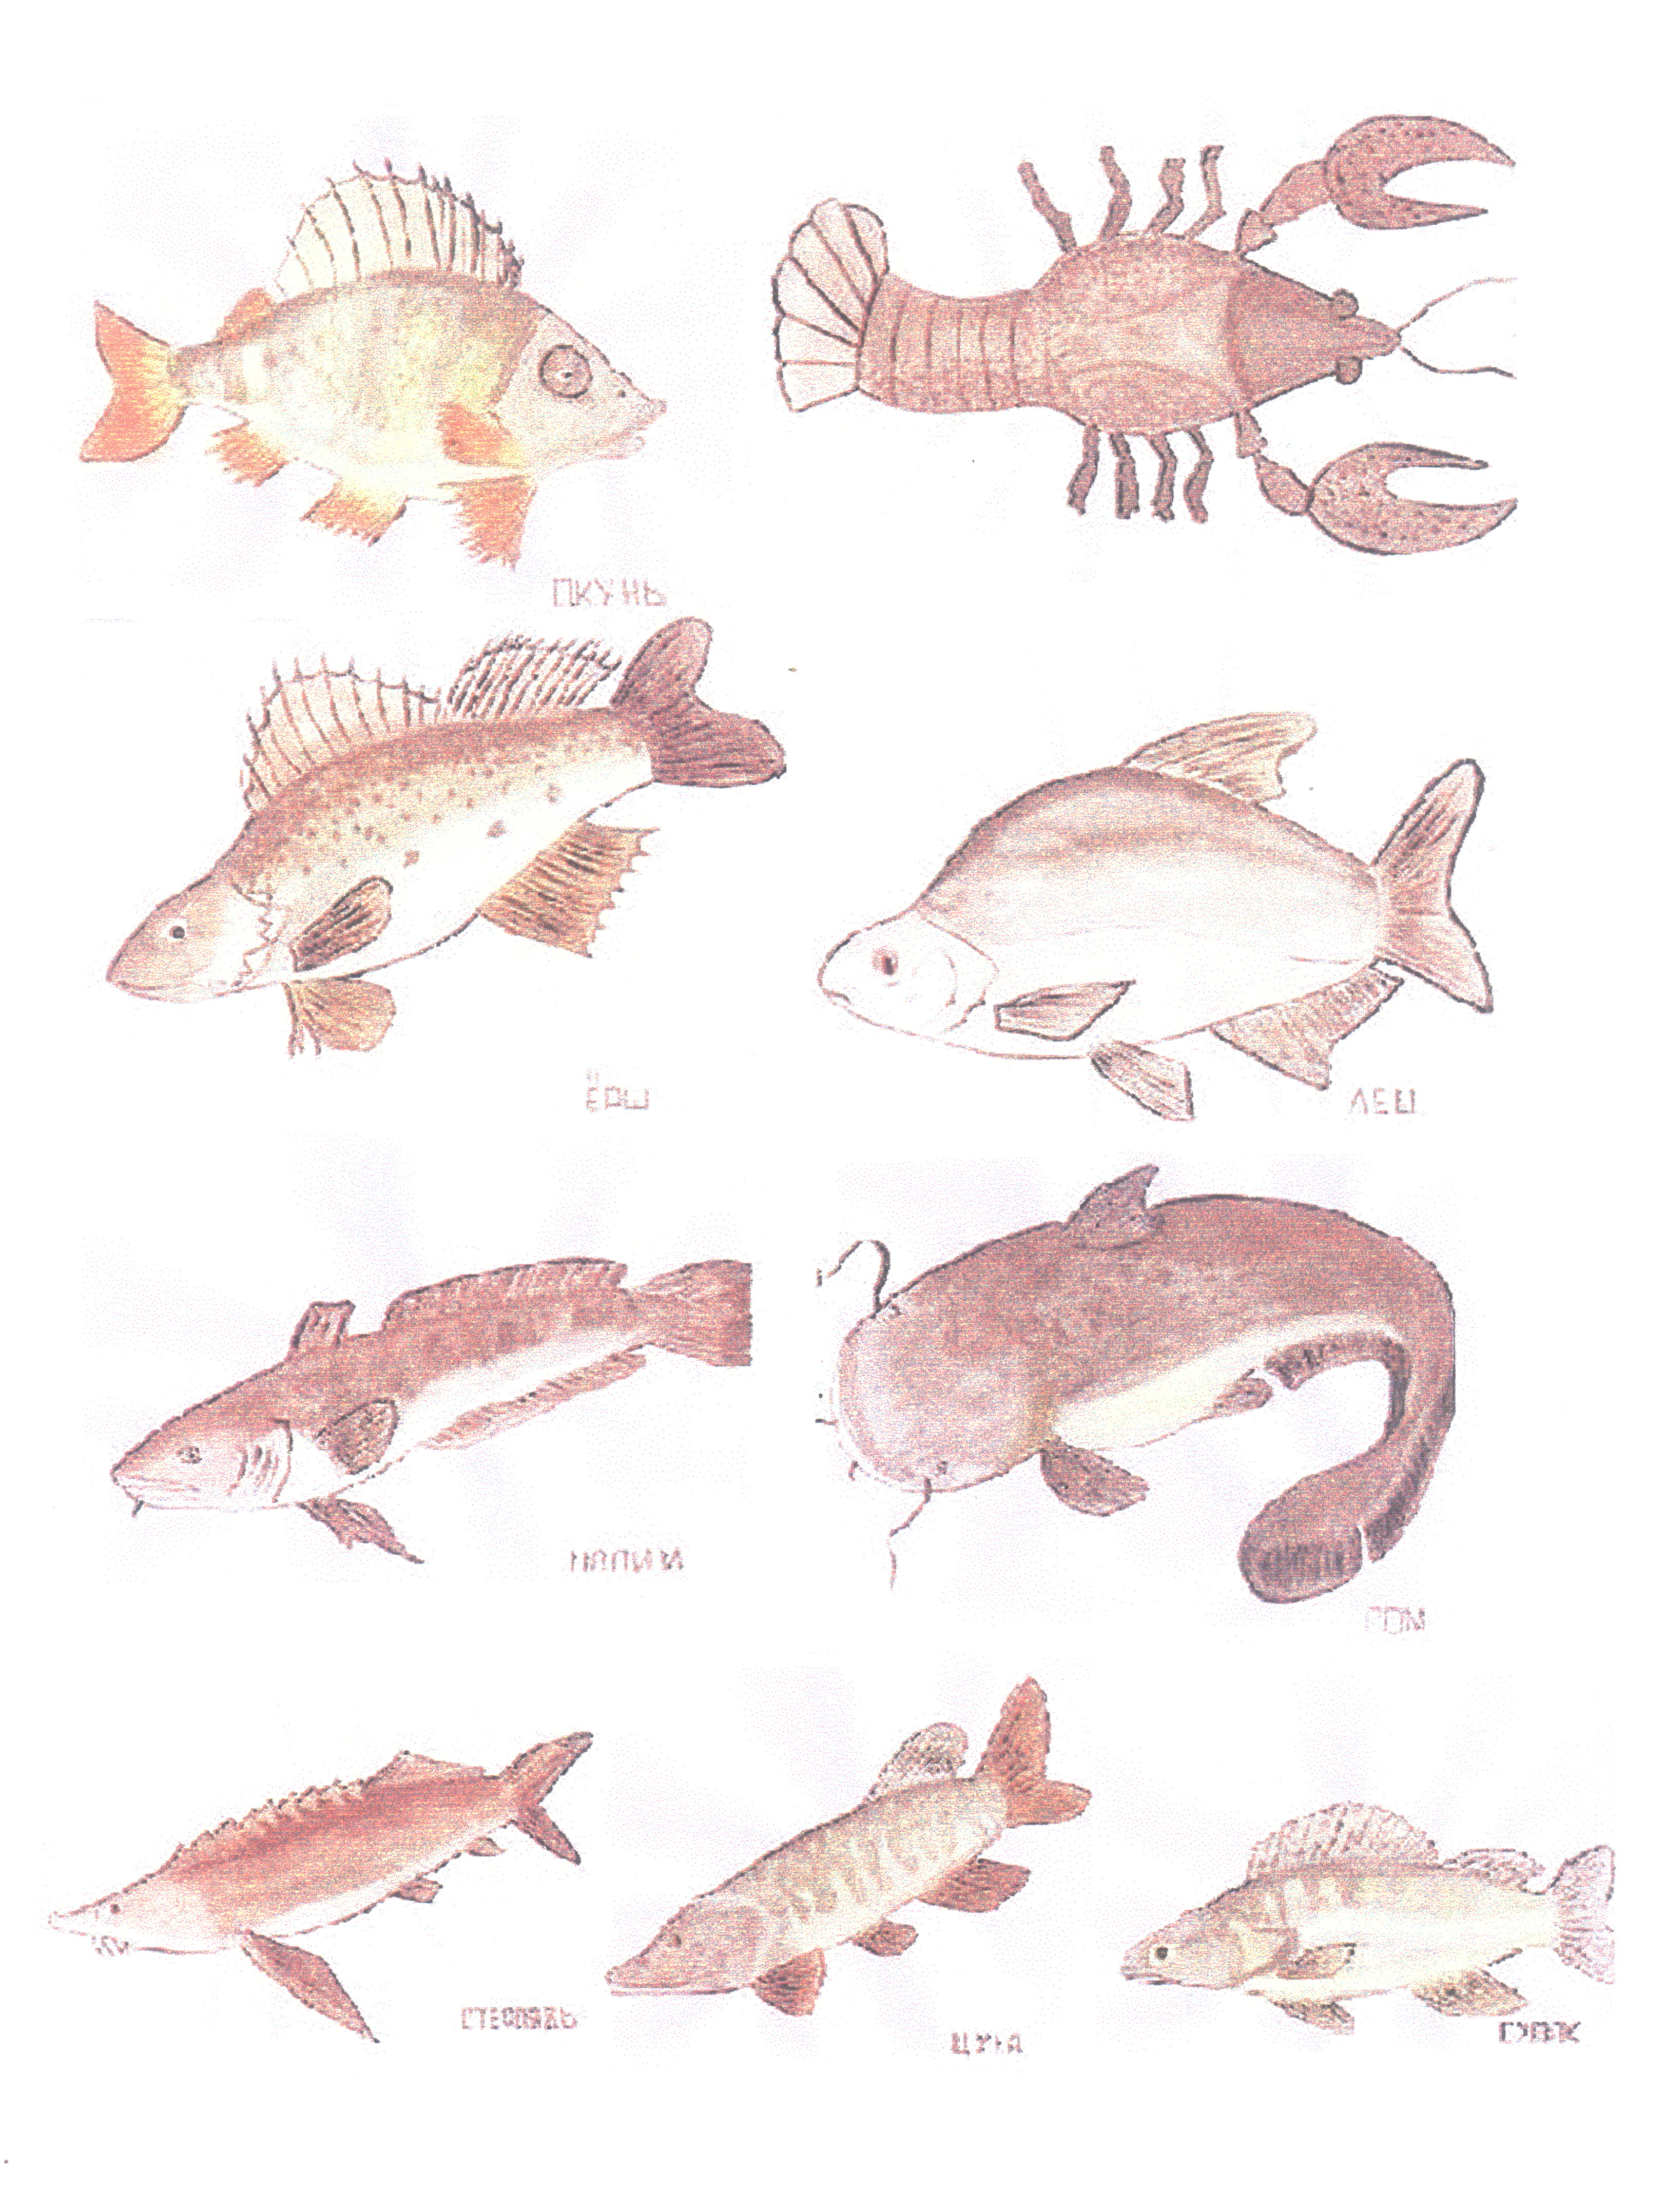 речные рыбы картинки для детей с названиями